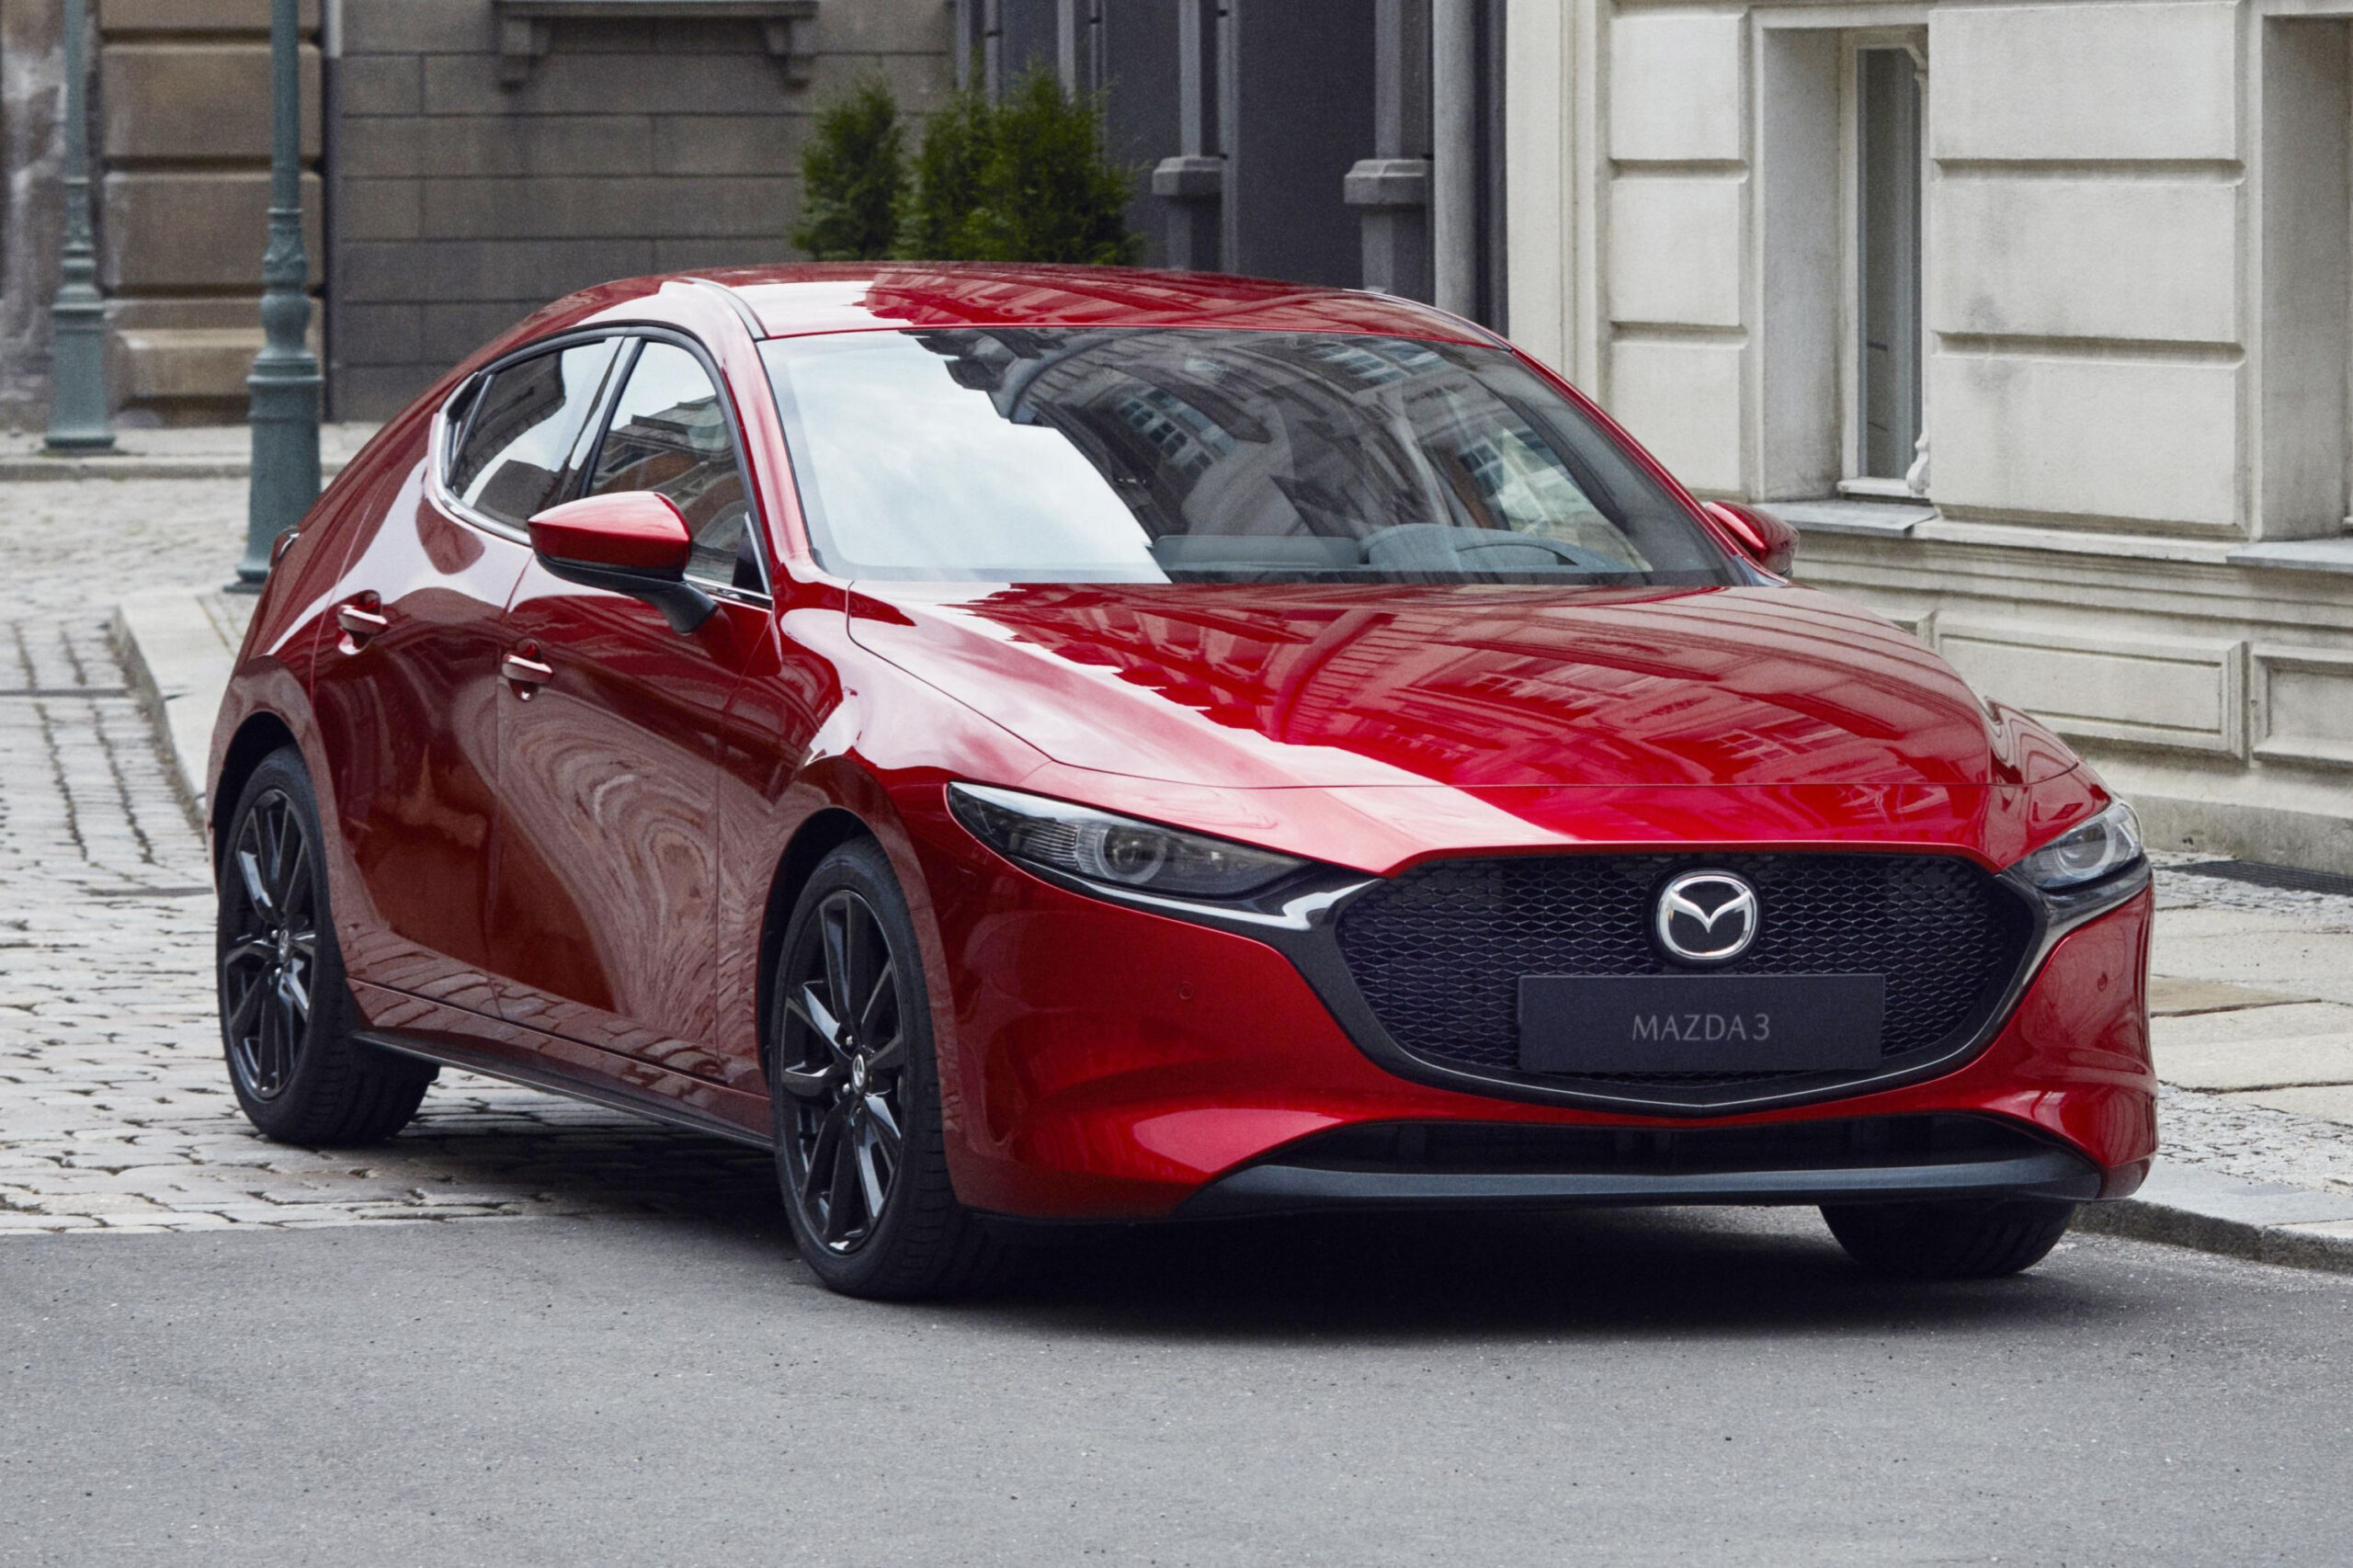 2023 Mazda 3: Slimmed-Down Range Hit With Price Hike | Carexpert regarding 2023 Mazda 3 Price